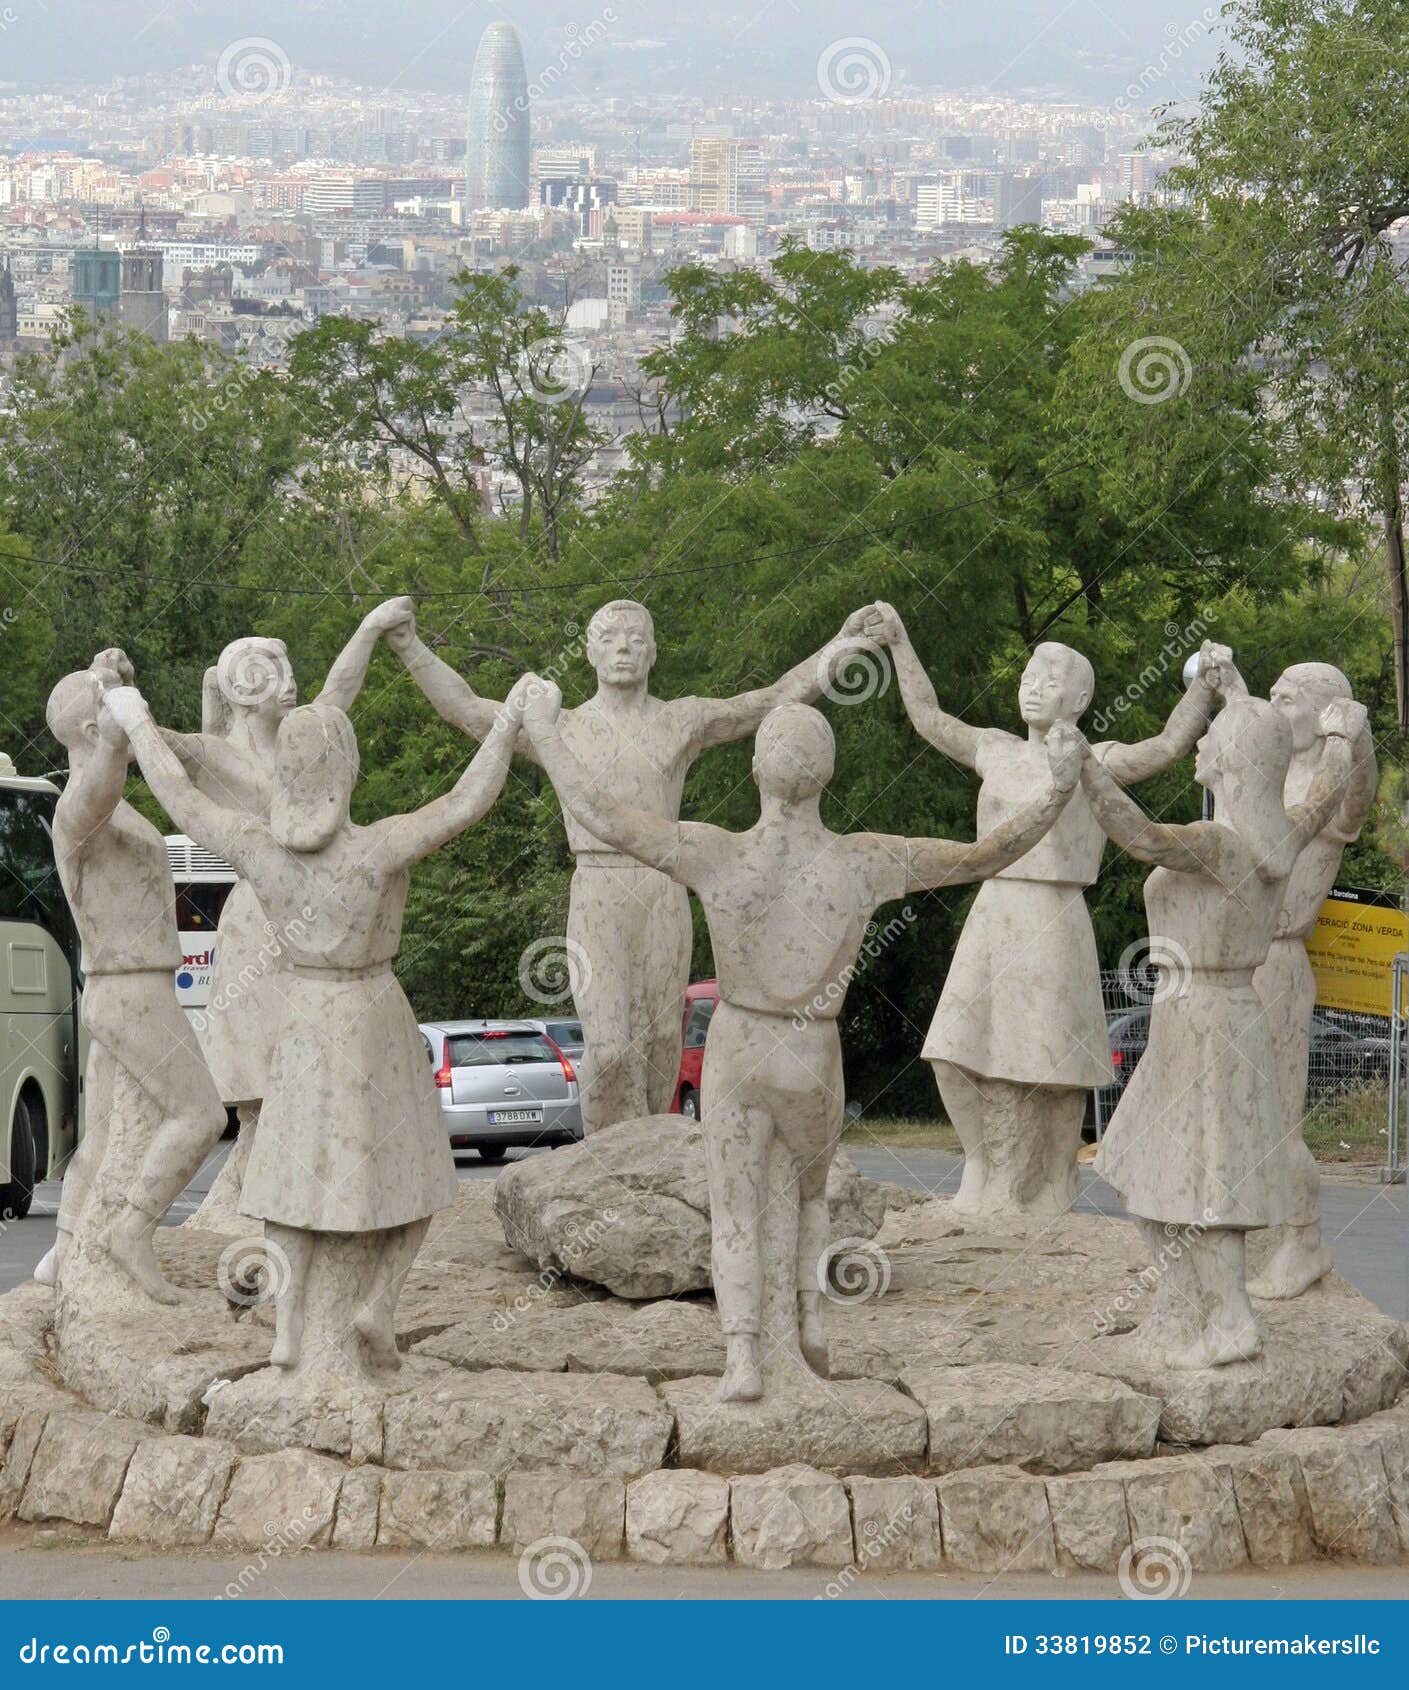 Het Monument La Sardana, Barcelona, Spanje.
Het monument is aan Sardana, Barcelona Spanje op de berg van Montjuic